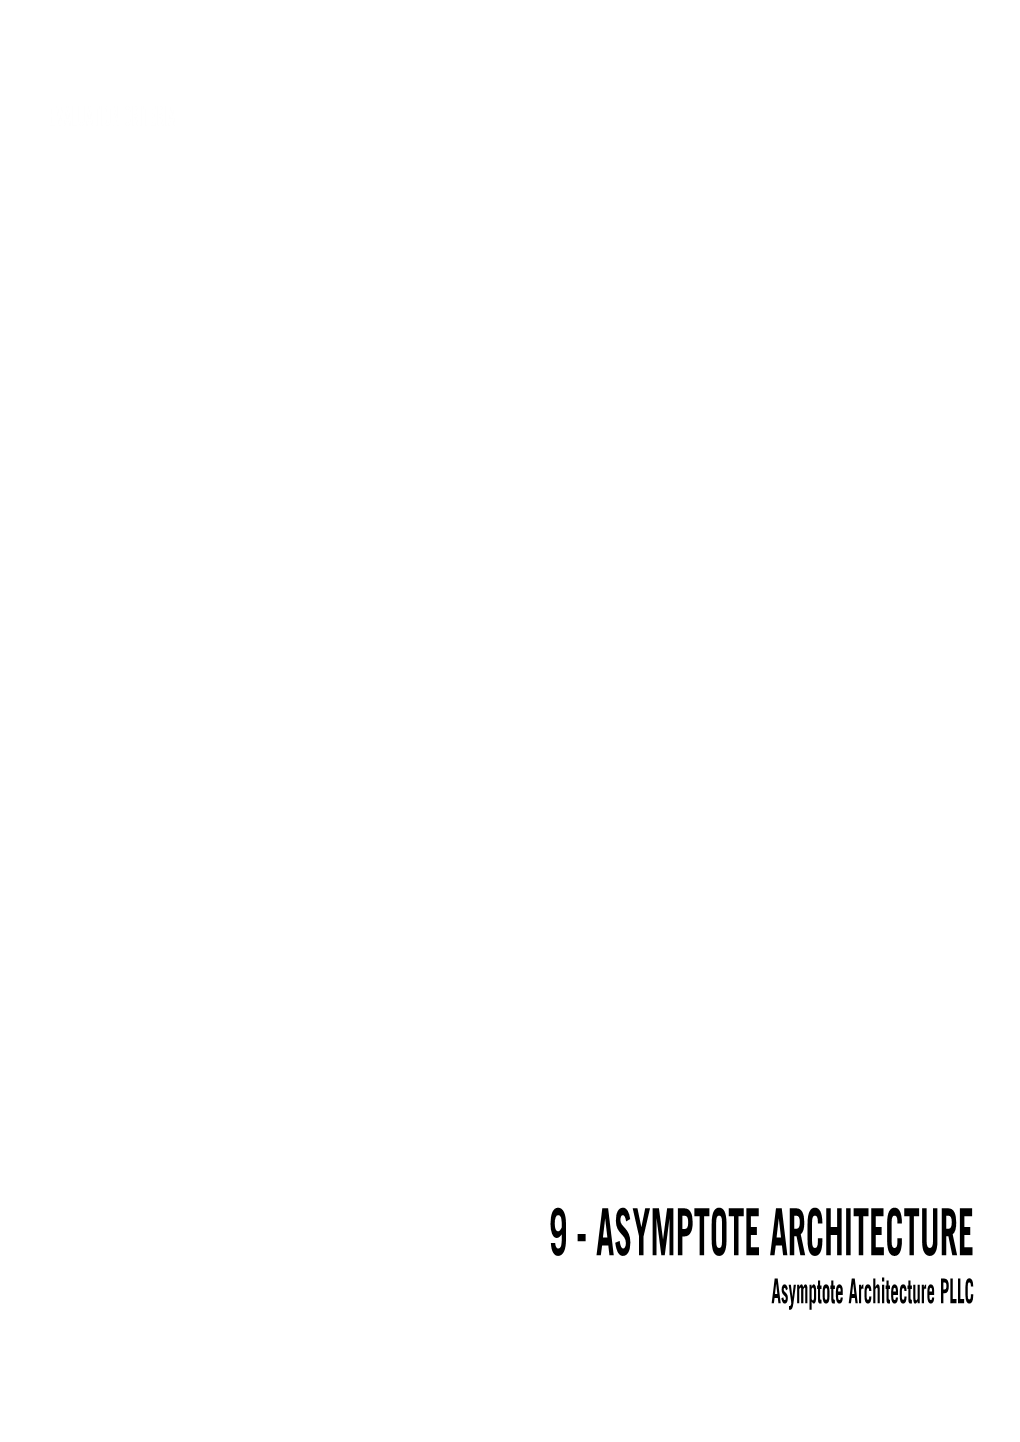 ASYMPTOTE ARCHITECTURE Asymptote Architecture PLLC